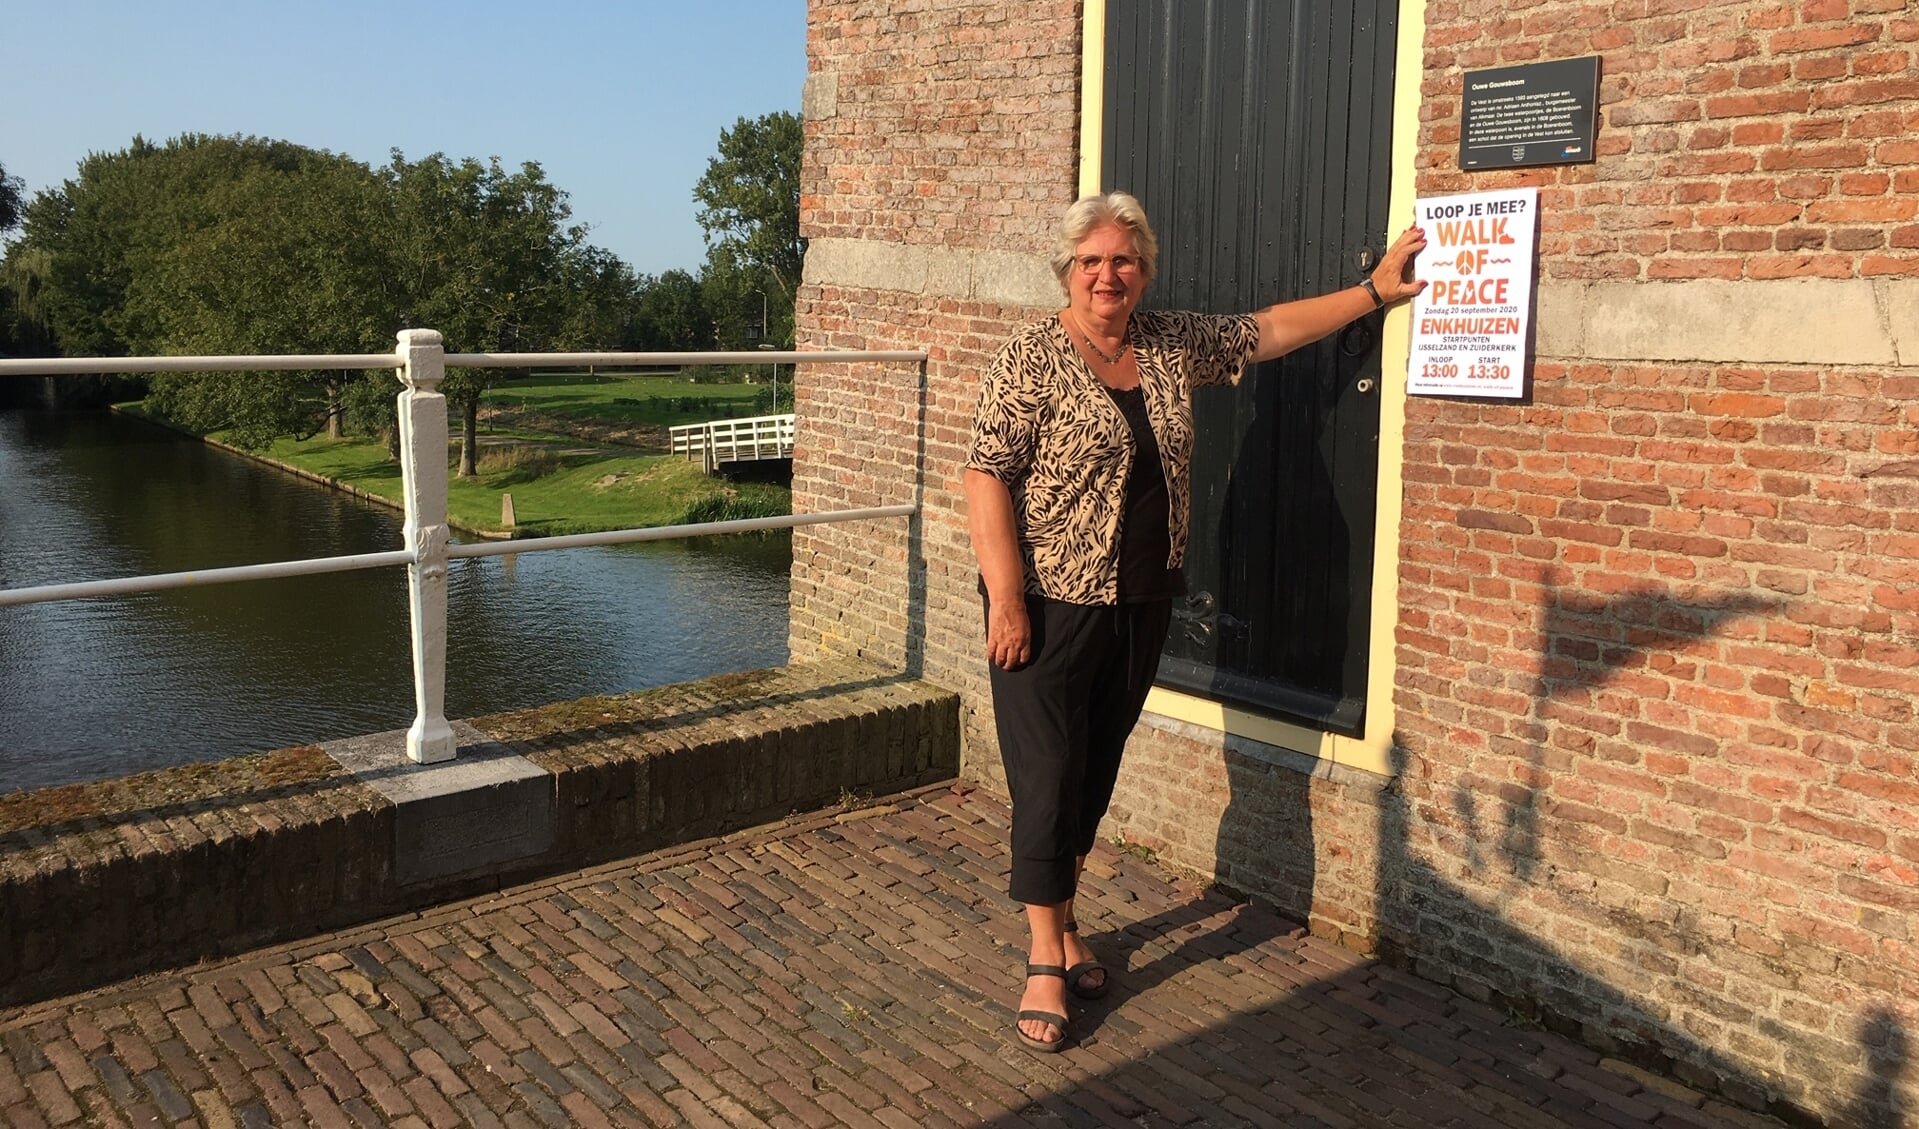 Louise Kooiman bij waterpoort Oude Gouwsboom waar een gedicht over kindvluchtelingen wordt voorgelezen.